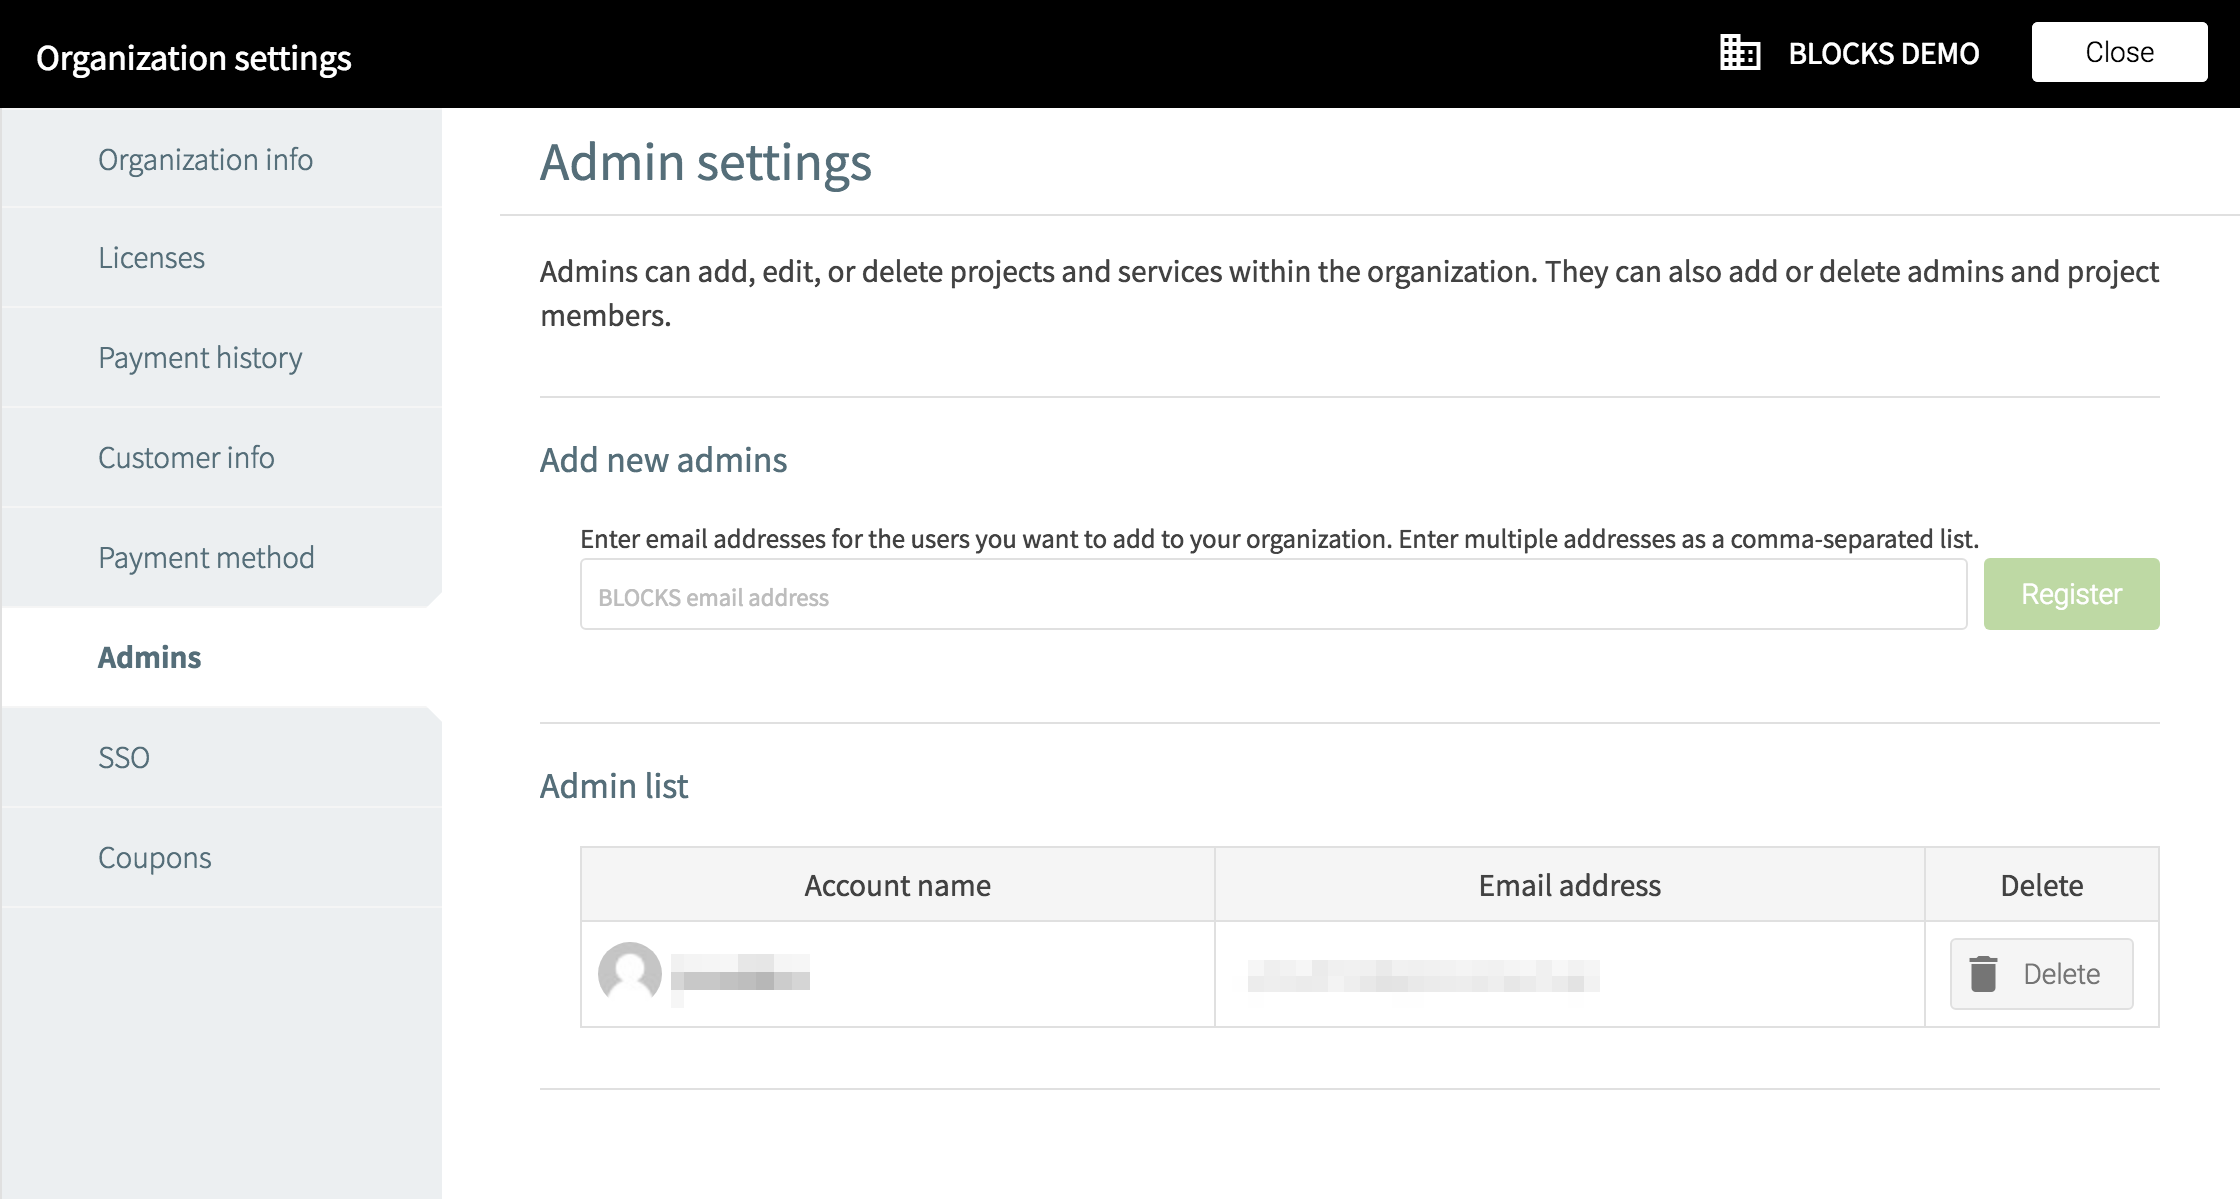 Organization settings admins screen